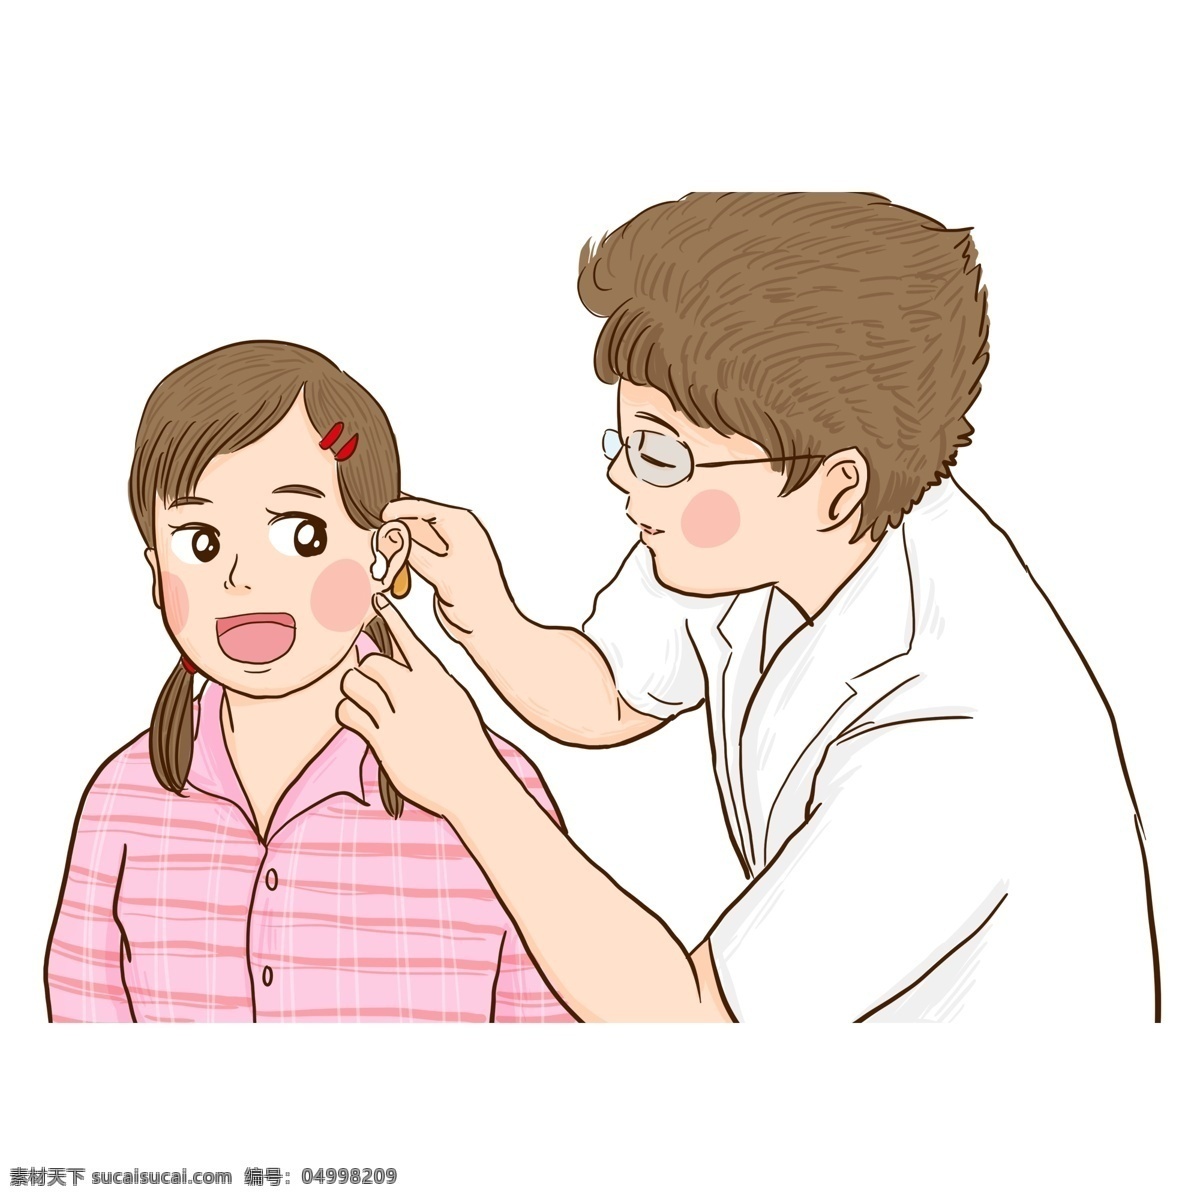 病人 戴 助听器 医生 漫画 人物 商用 元素 卡通 女孩 手绘 残疾人 国际残疾人 聋哑女孩